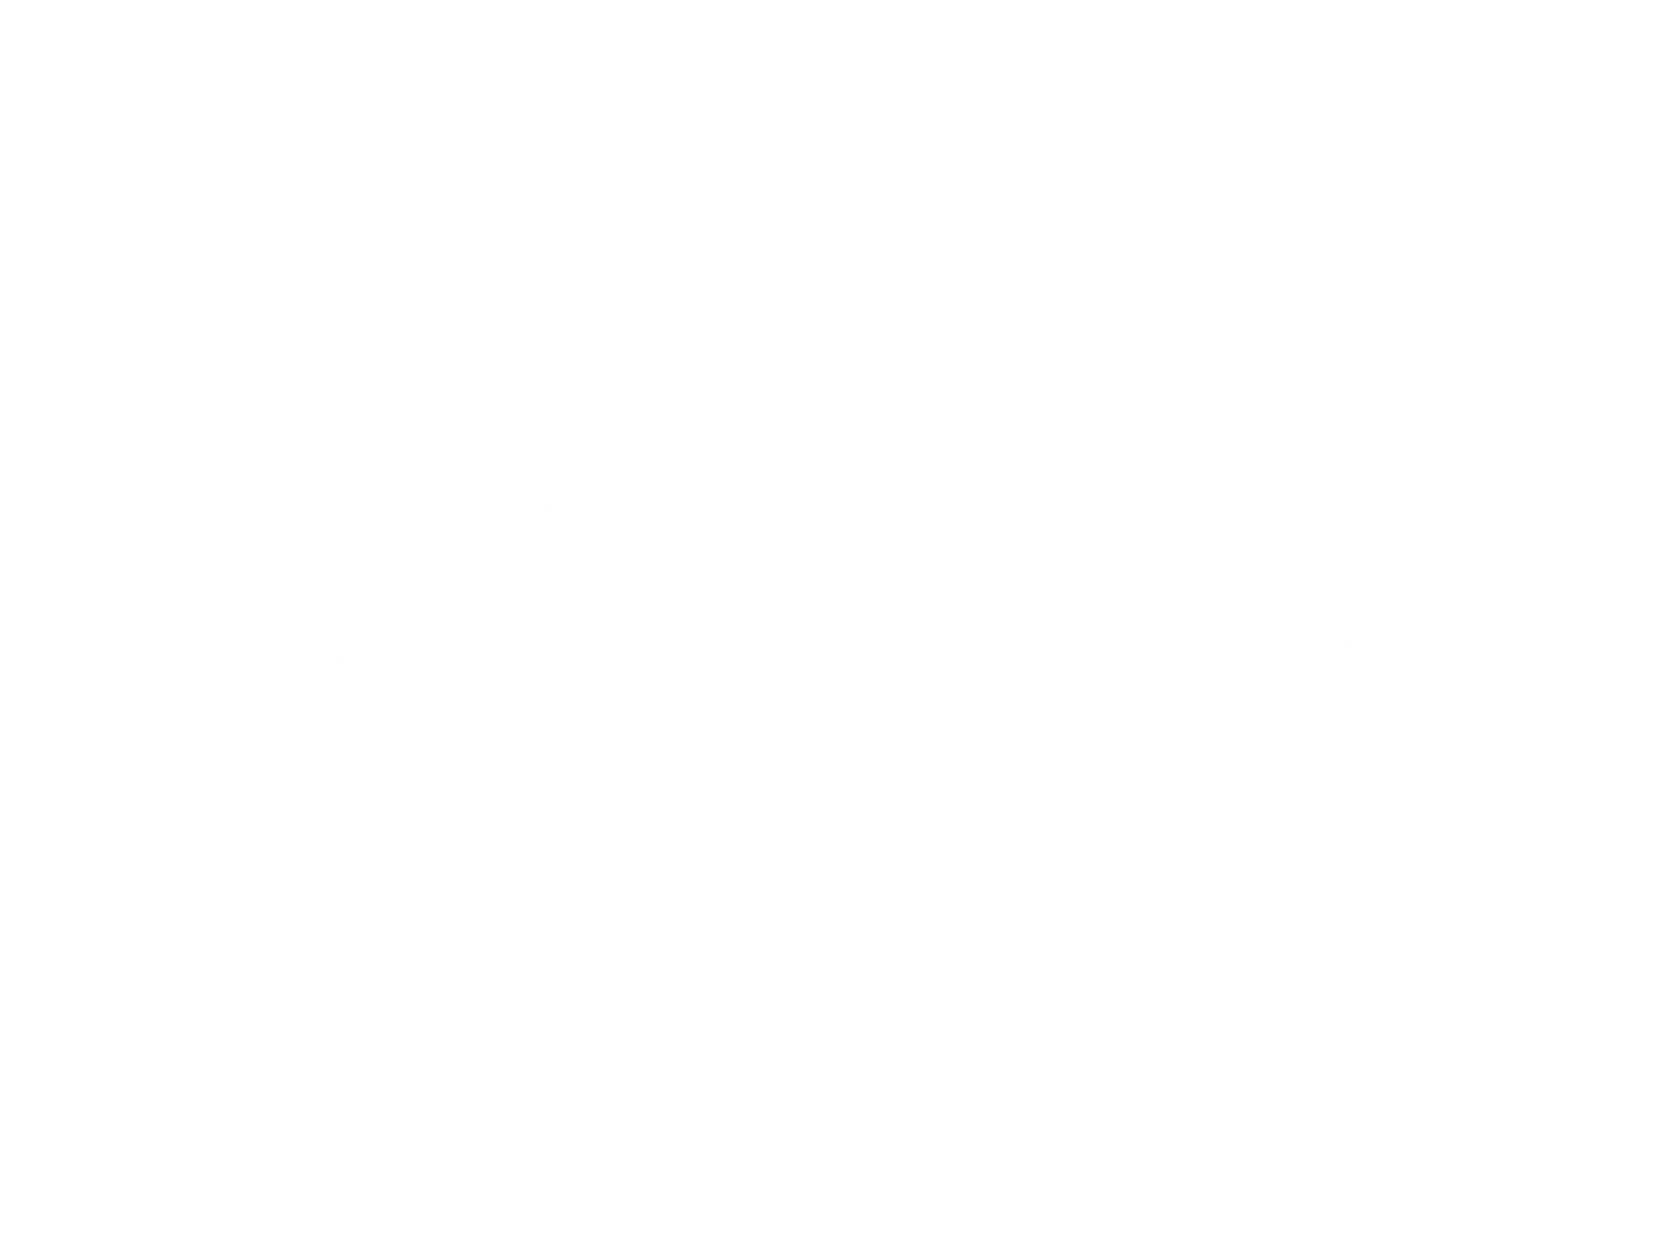 Ascend at The Aspen Institute